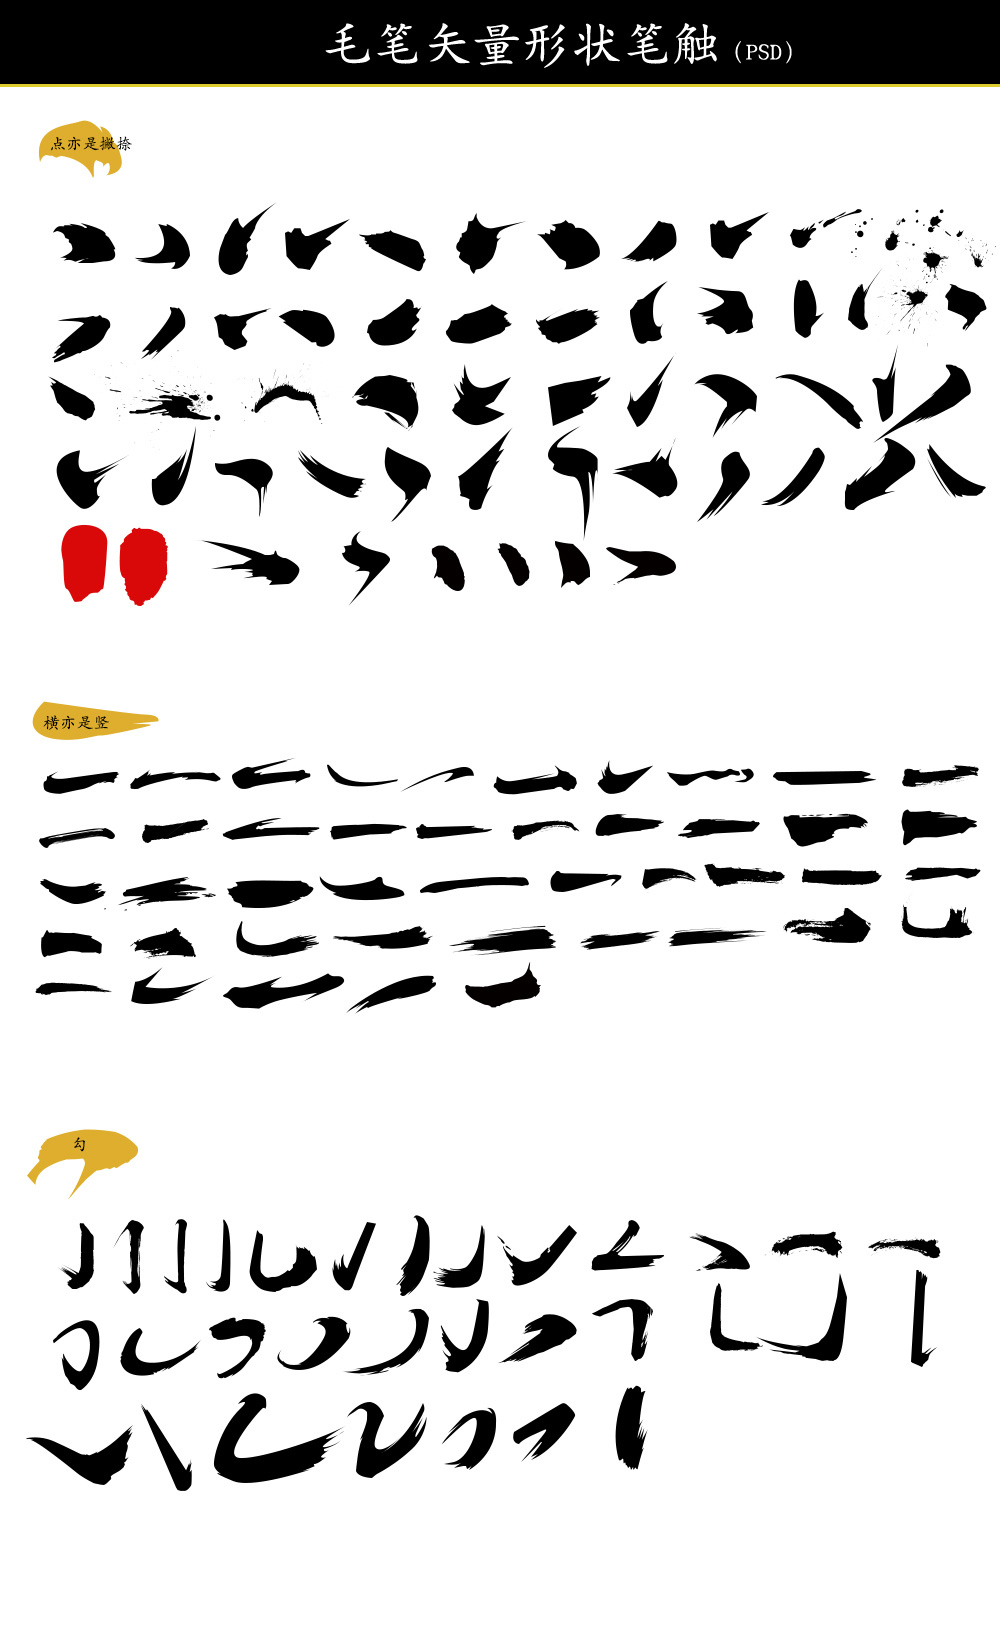 毛笔书法笔触及书法字体设计素材资源打包（4410）图层云3